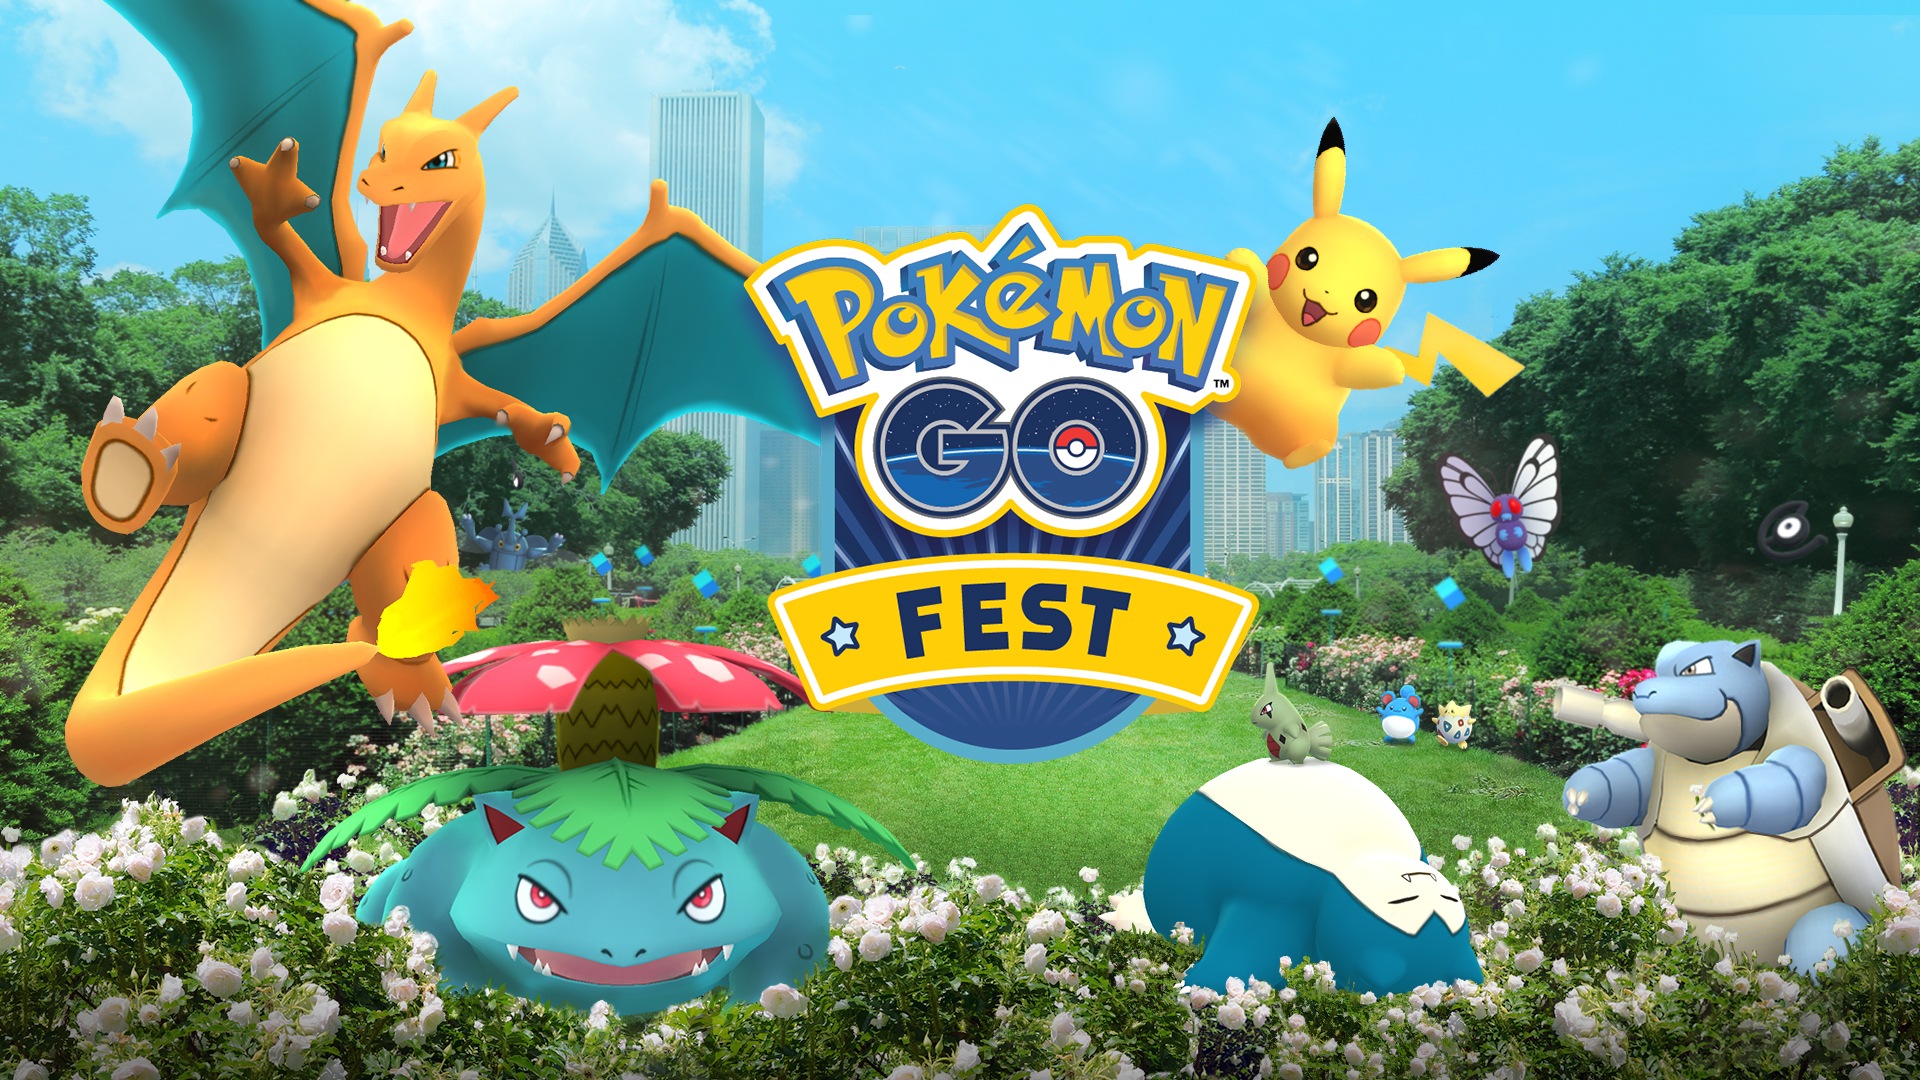 Pokémon GO feiert einjähriges Jubiläum mit Sommerevents